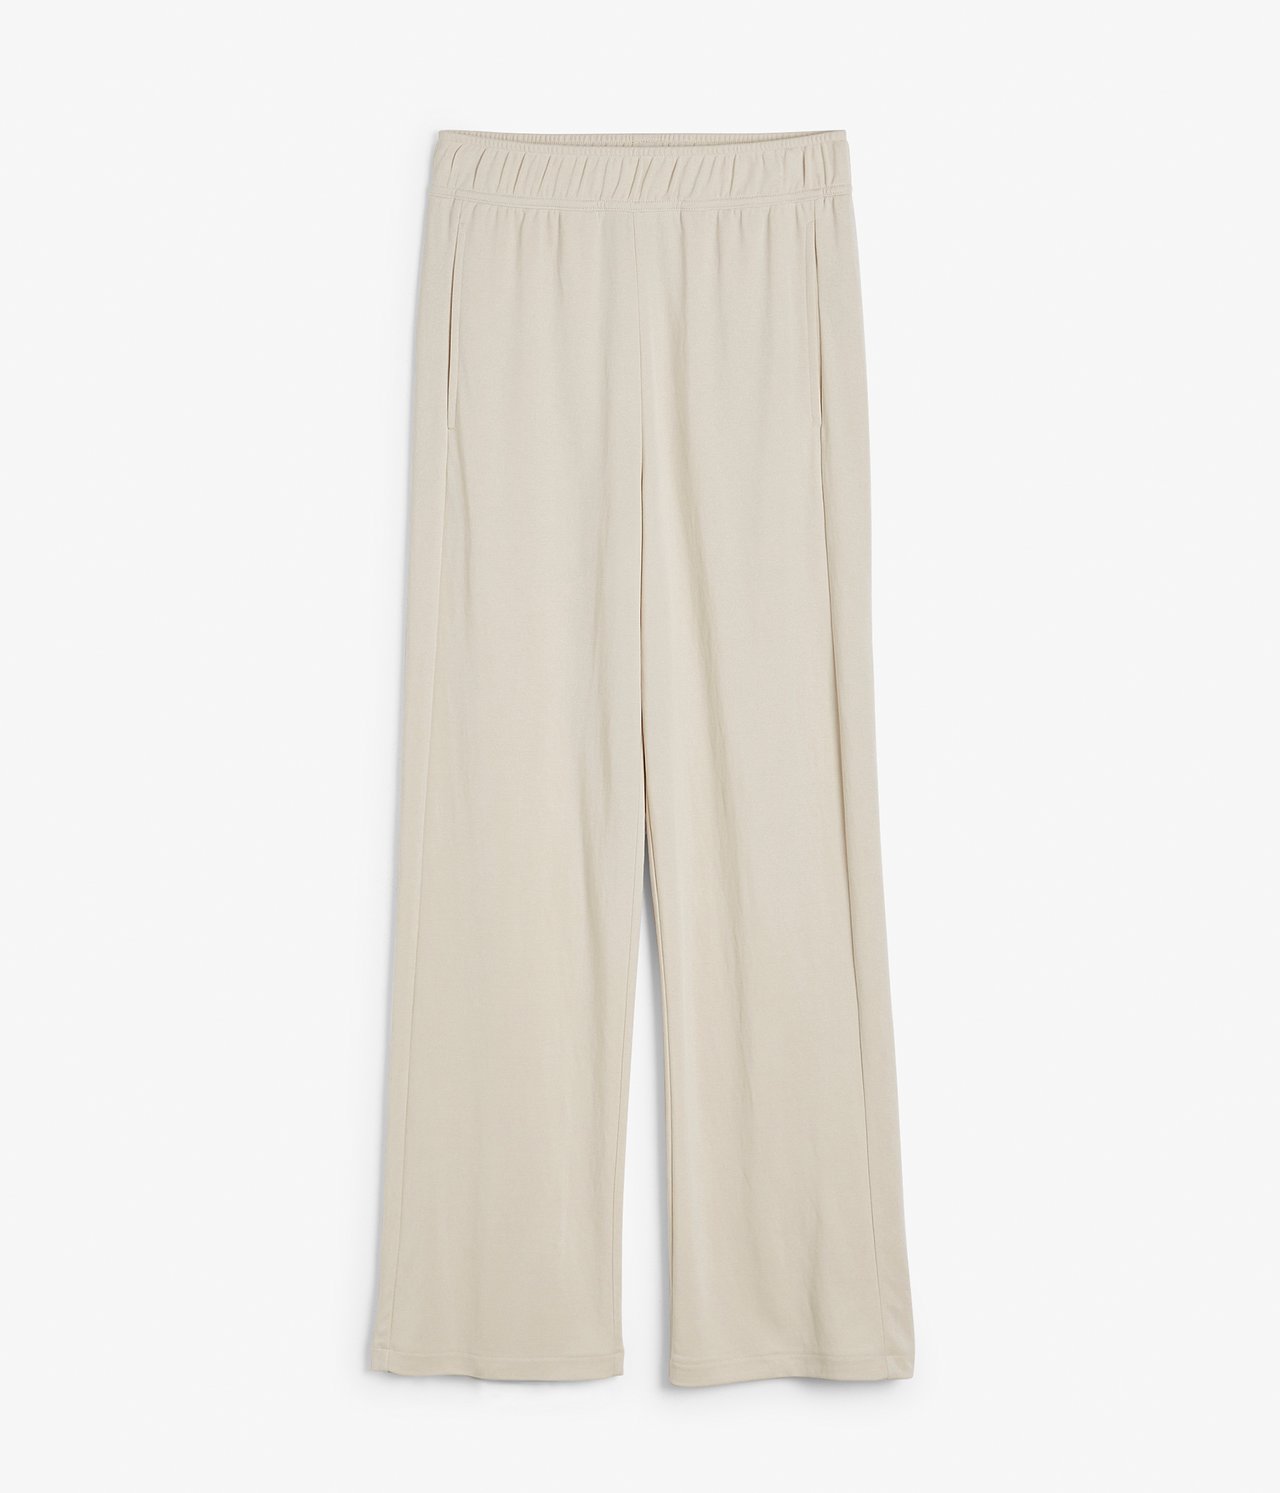 Bukse Loungewear Lys beige - null - 5